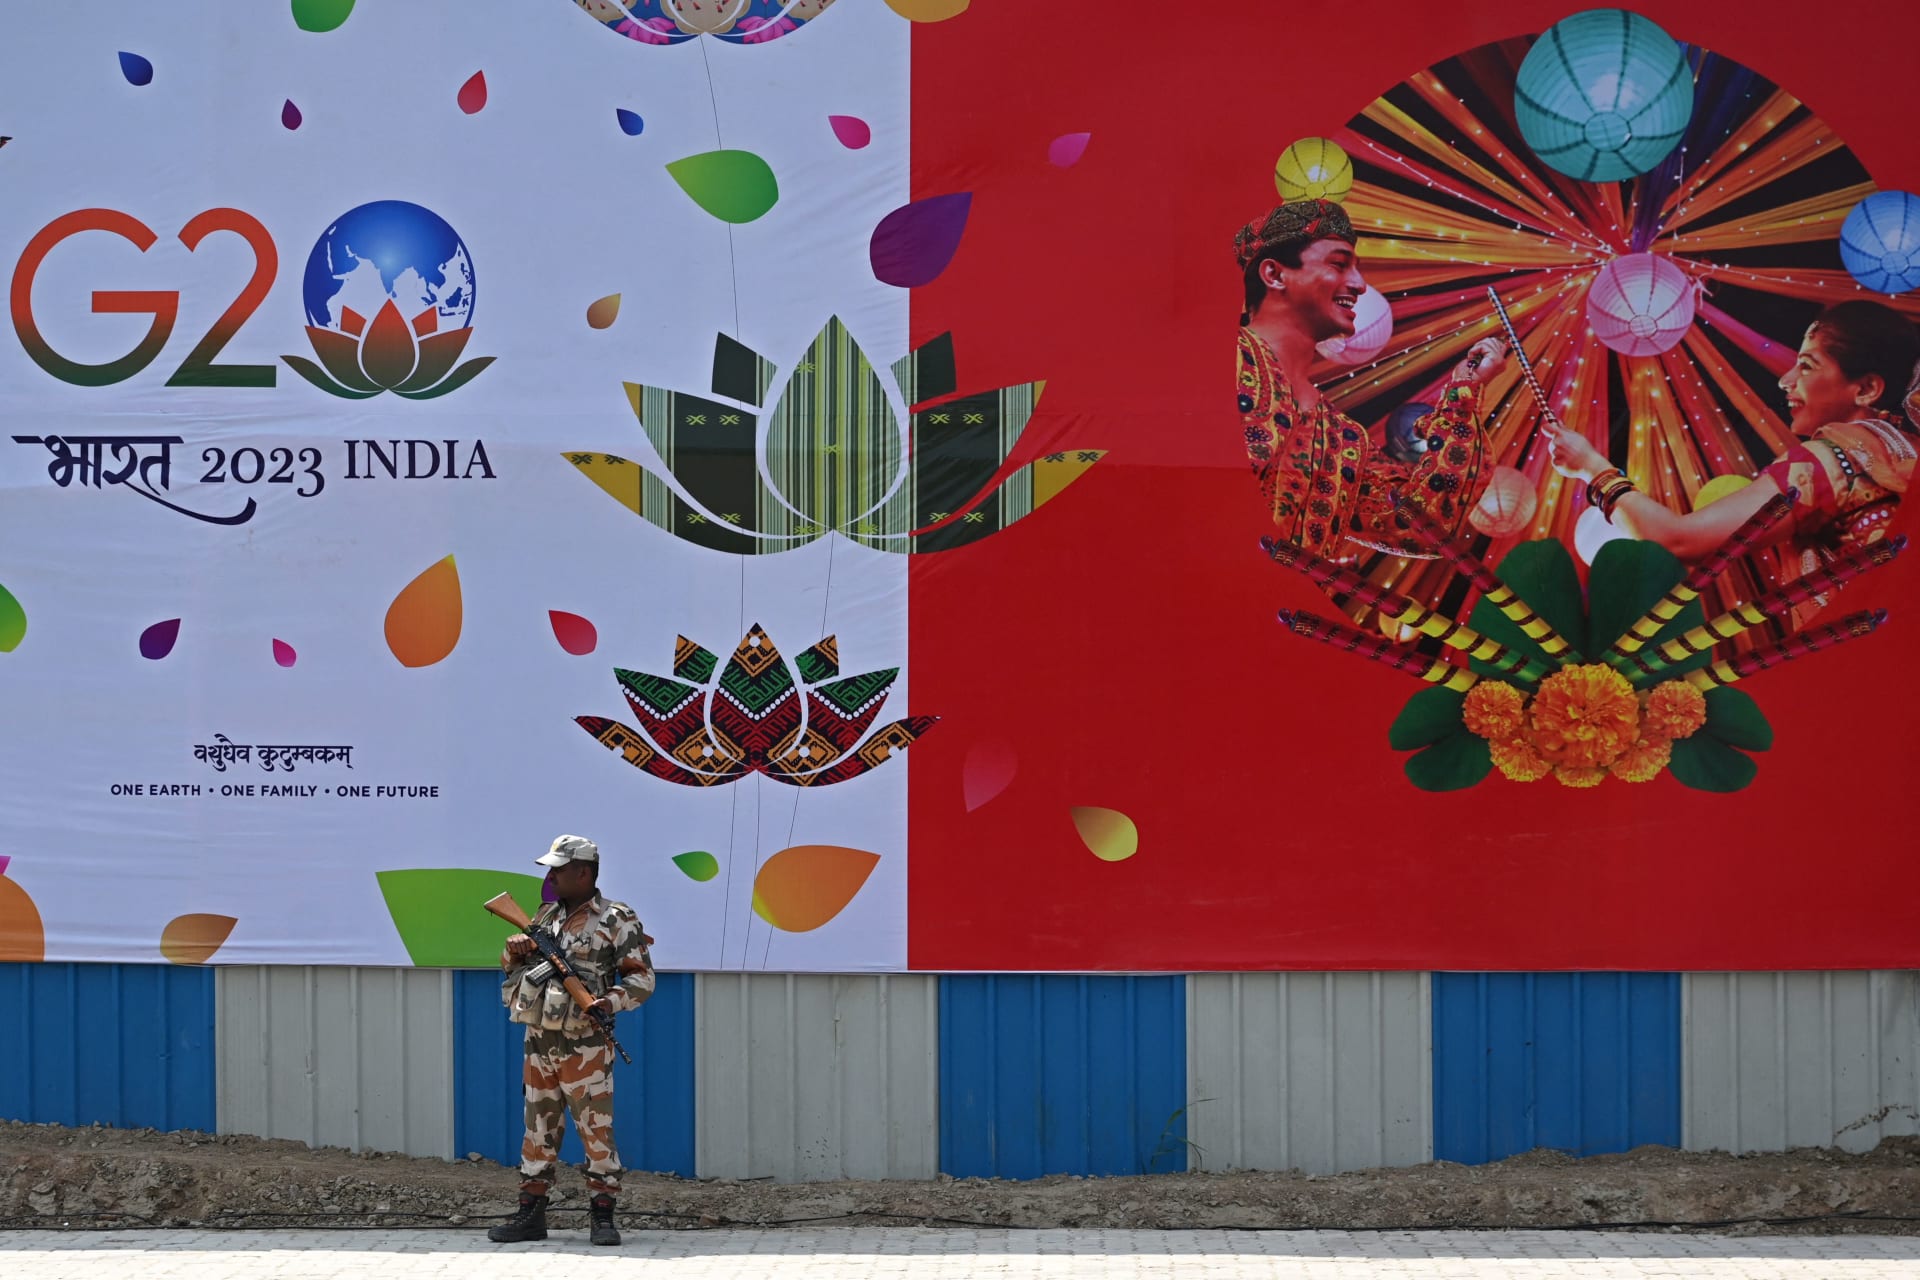 الهند باتت "بهارات" في دعوة رسمية لقمة العشرين.. ما قصة الاسم ولماذا يثير جدلا؟  